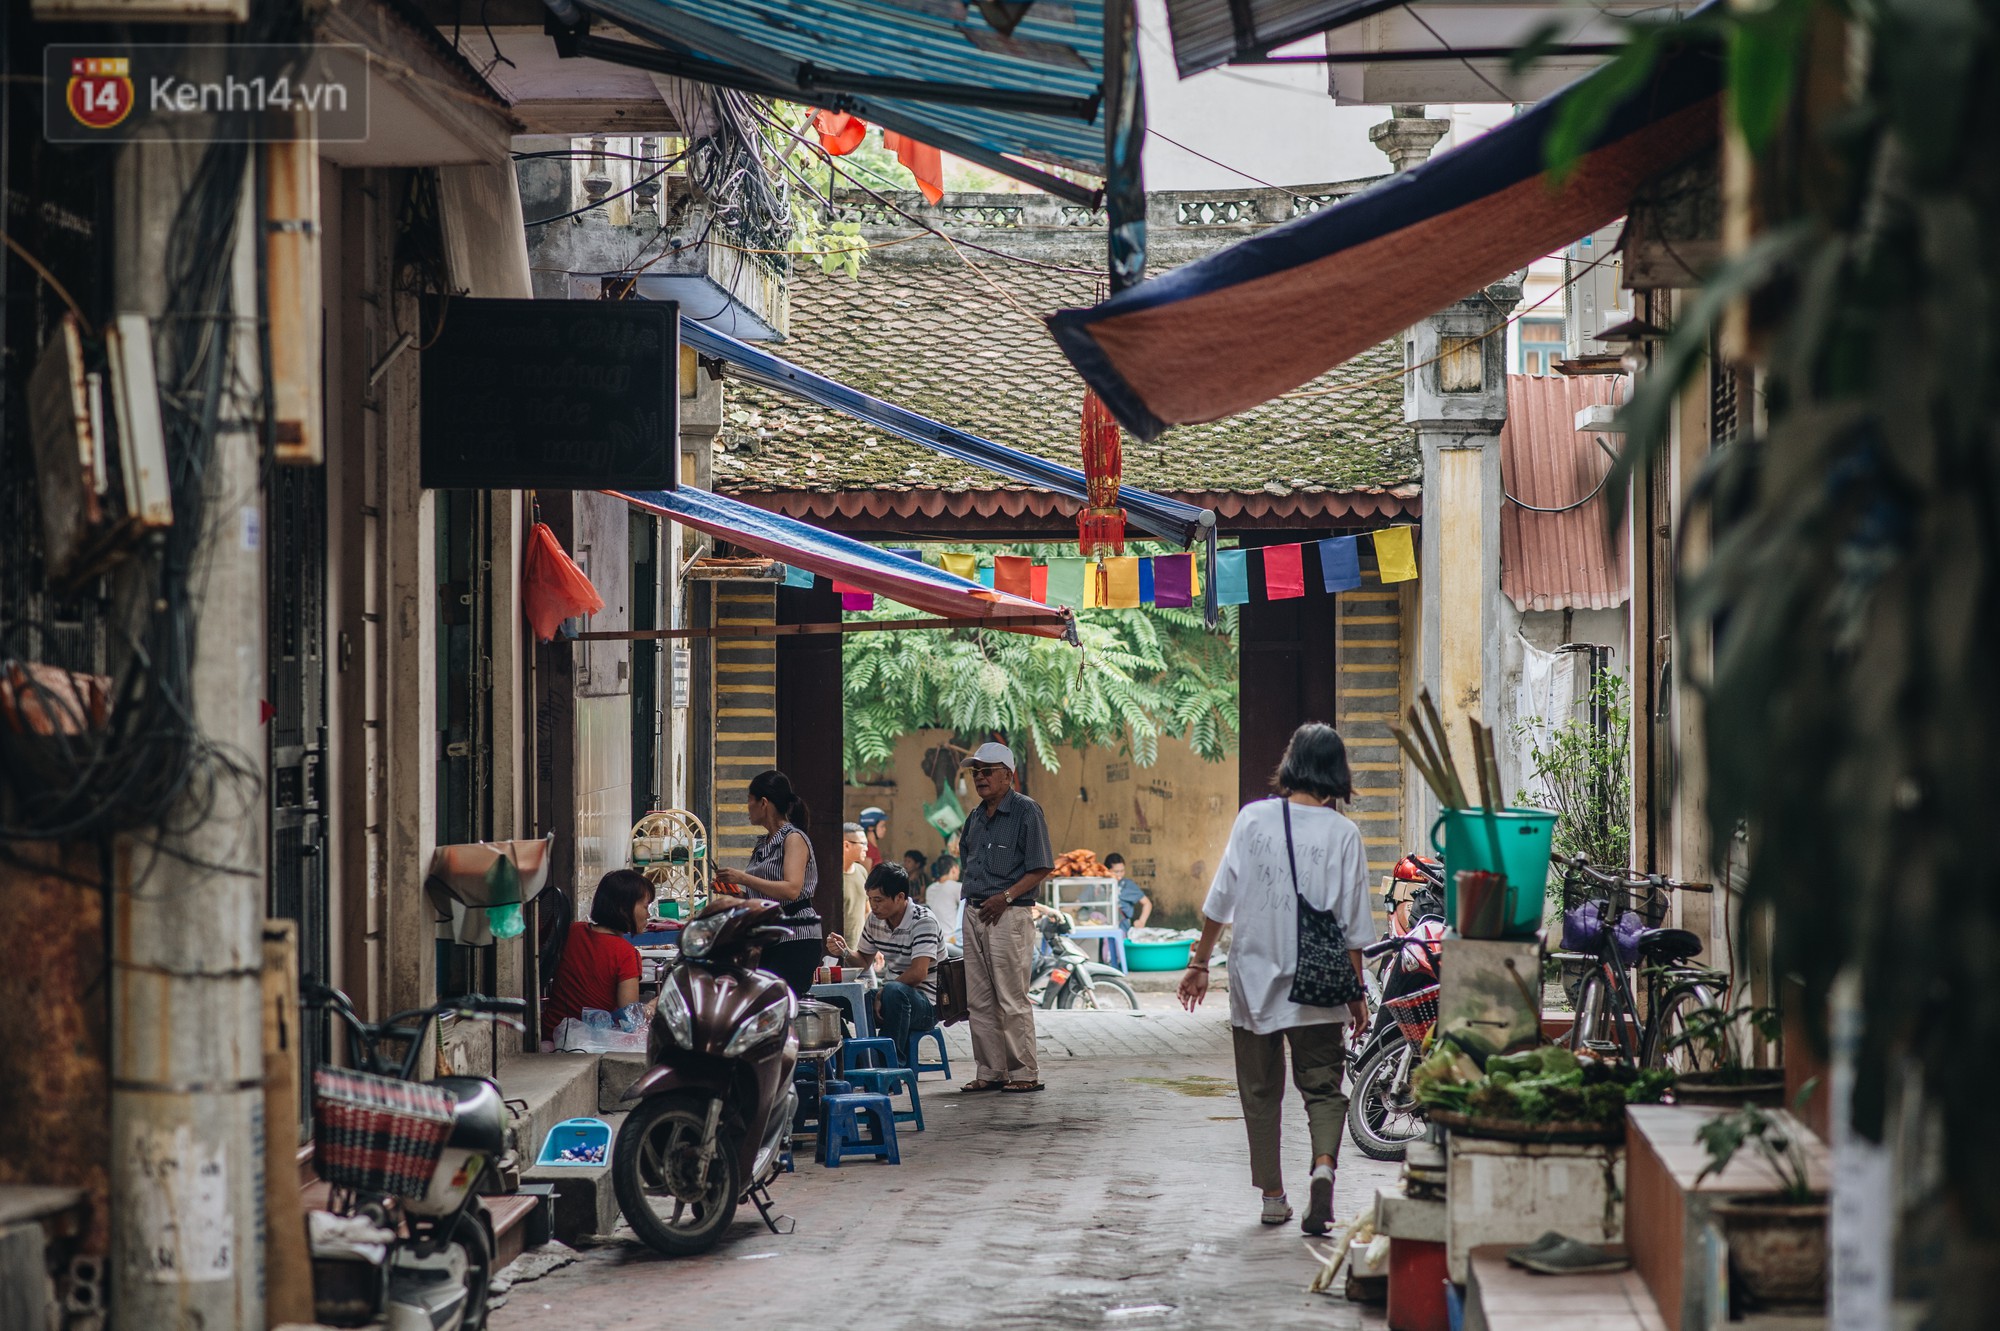 Chuyện về một con phố có nhiều cổng làng nhất Hà Nội: Đưa chân qua cổng phải tôn trọng nếp làng - Ảnh 4.